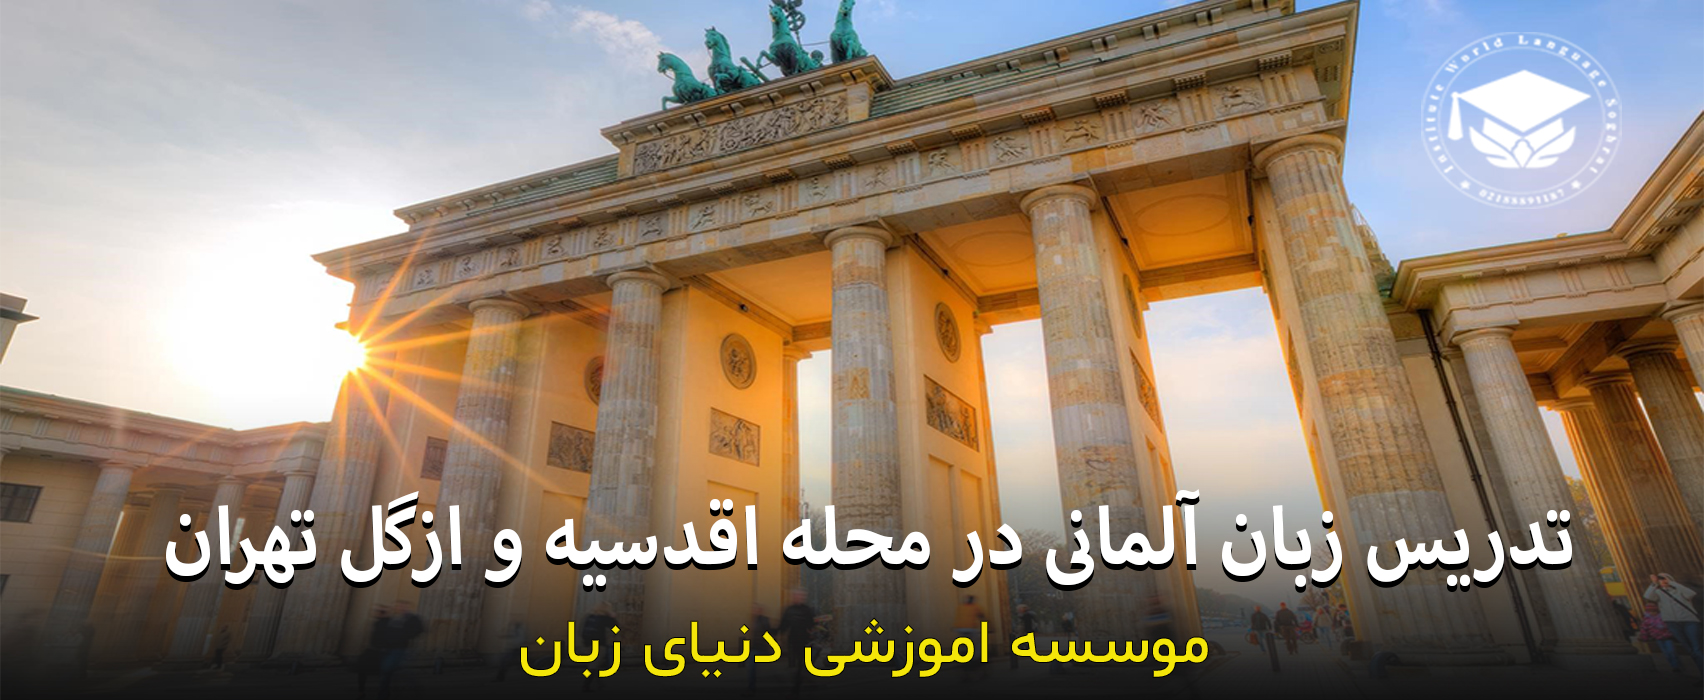 آموزش خصوصی زبان آلمانی در اقدسیه و ازگل تهران